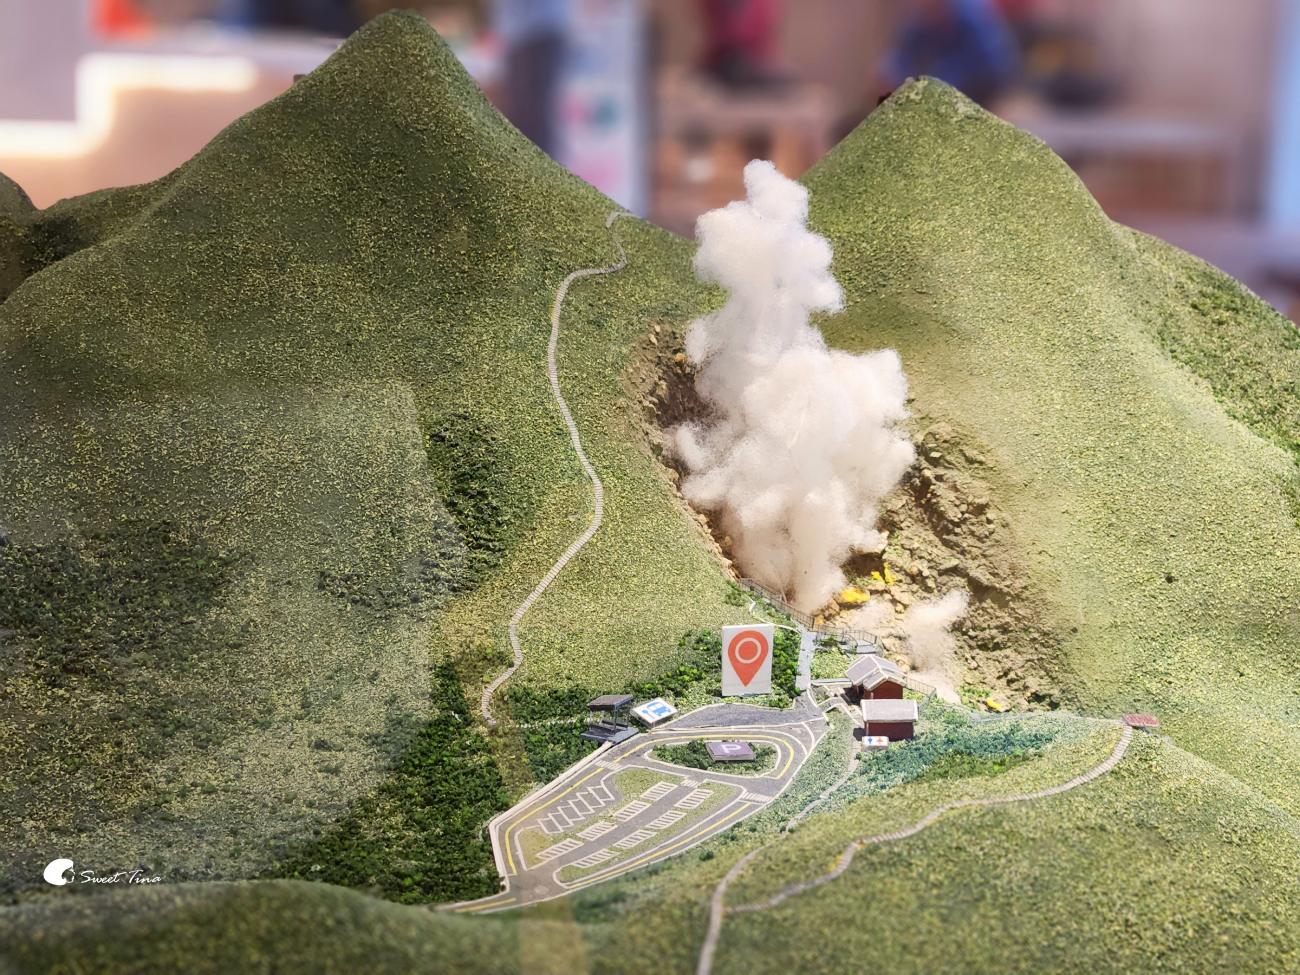 陽明山景點 | 小油坑遊憩區 – 觀看後火山噴氣孔硫磺結晶, 遠眺竹子山與金山